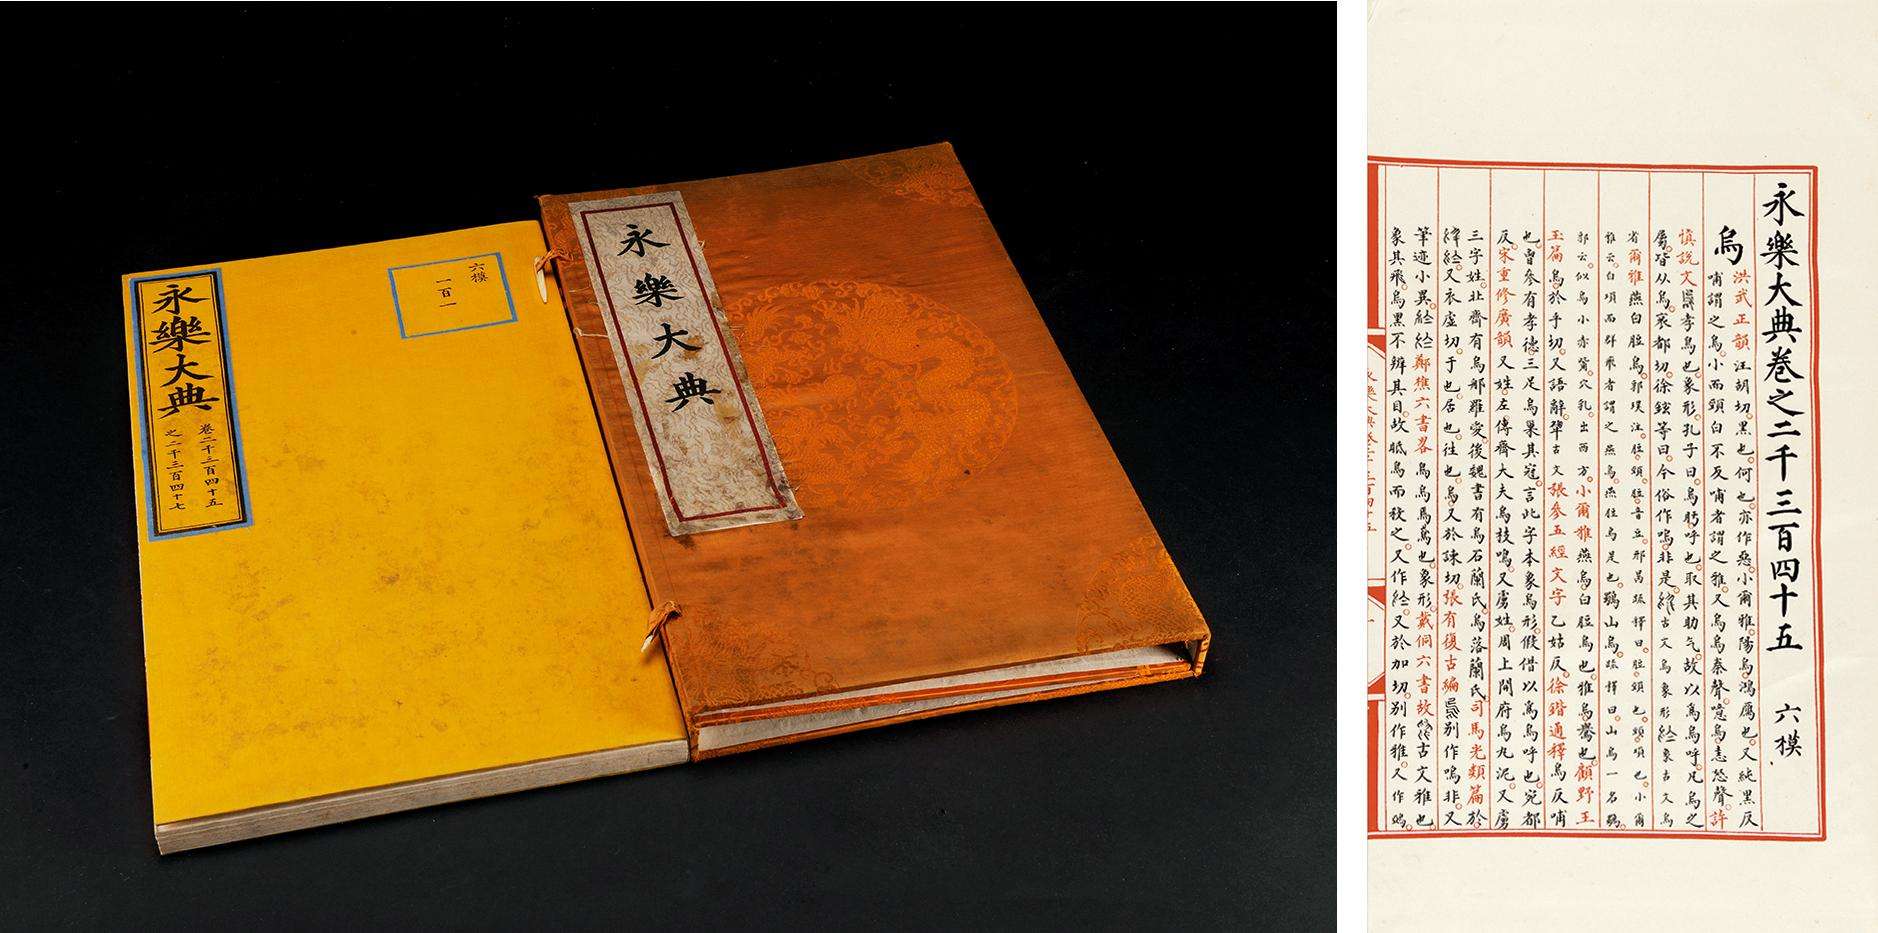 它包含八千余种古书典籍，耗费三千多人力，是中国文化的一个符号